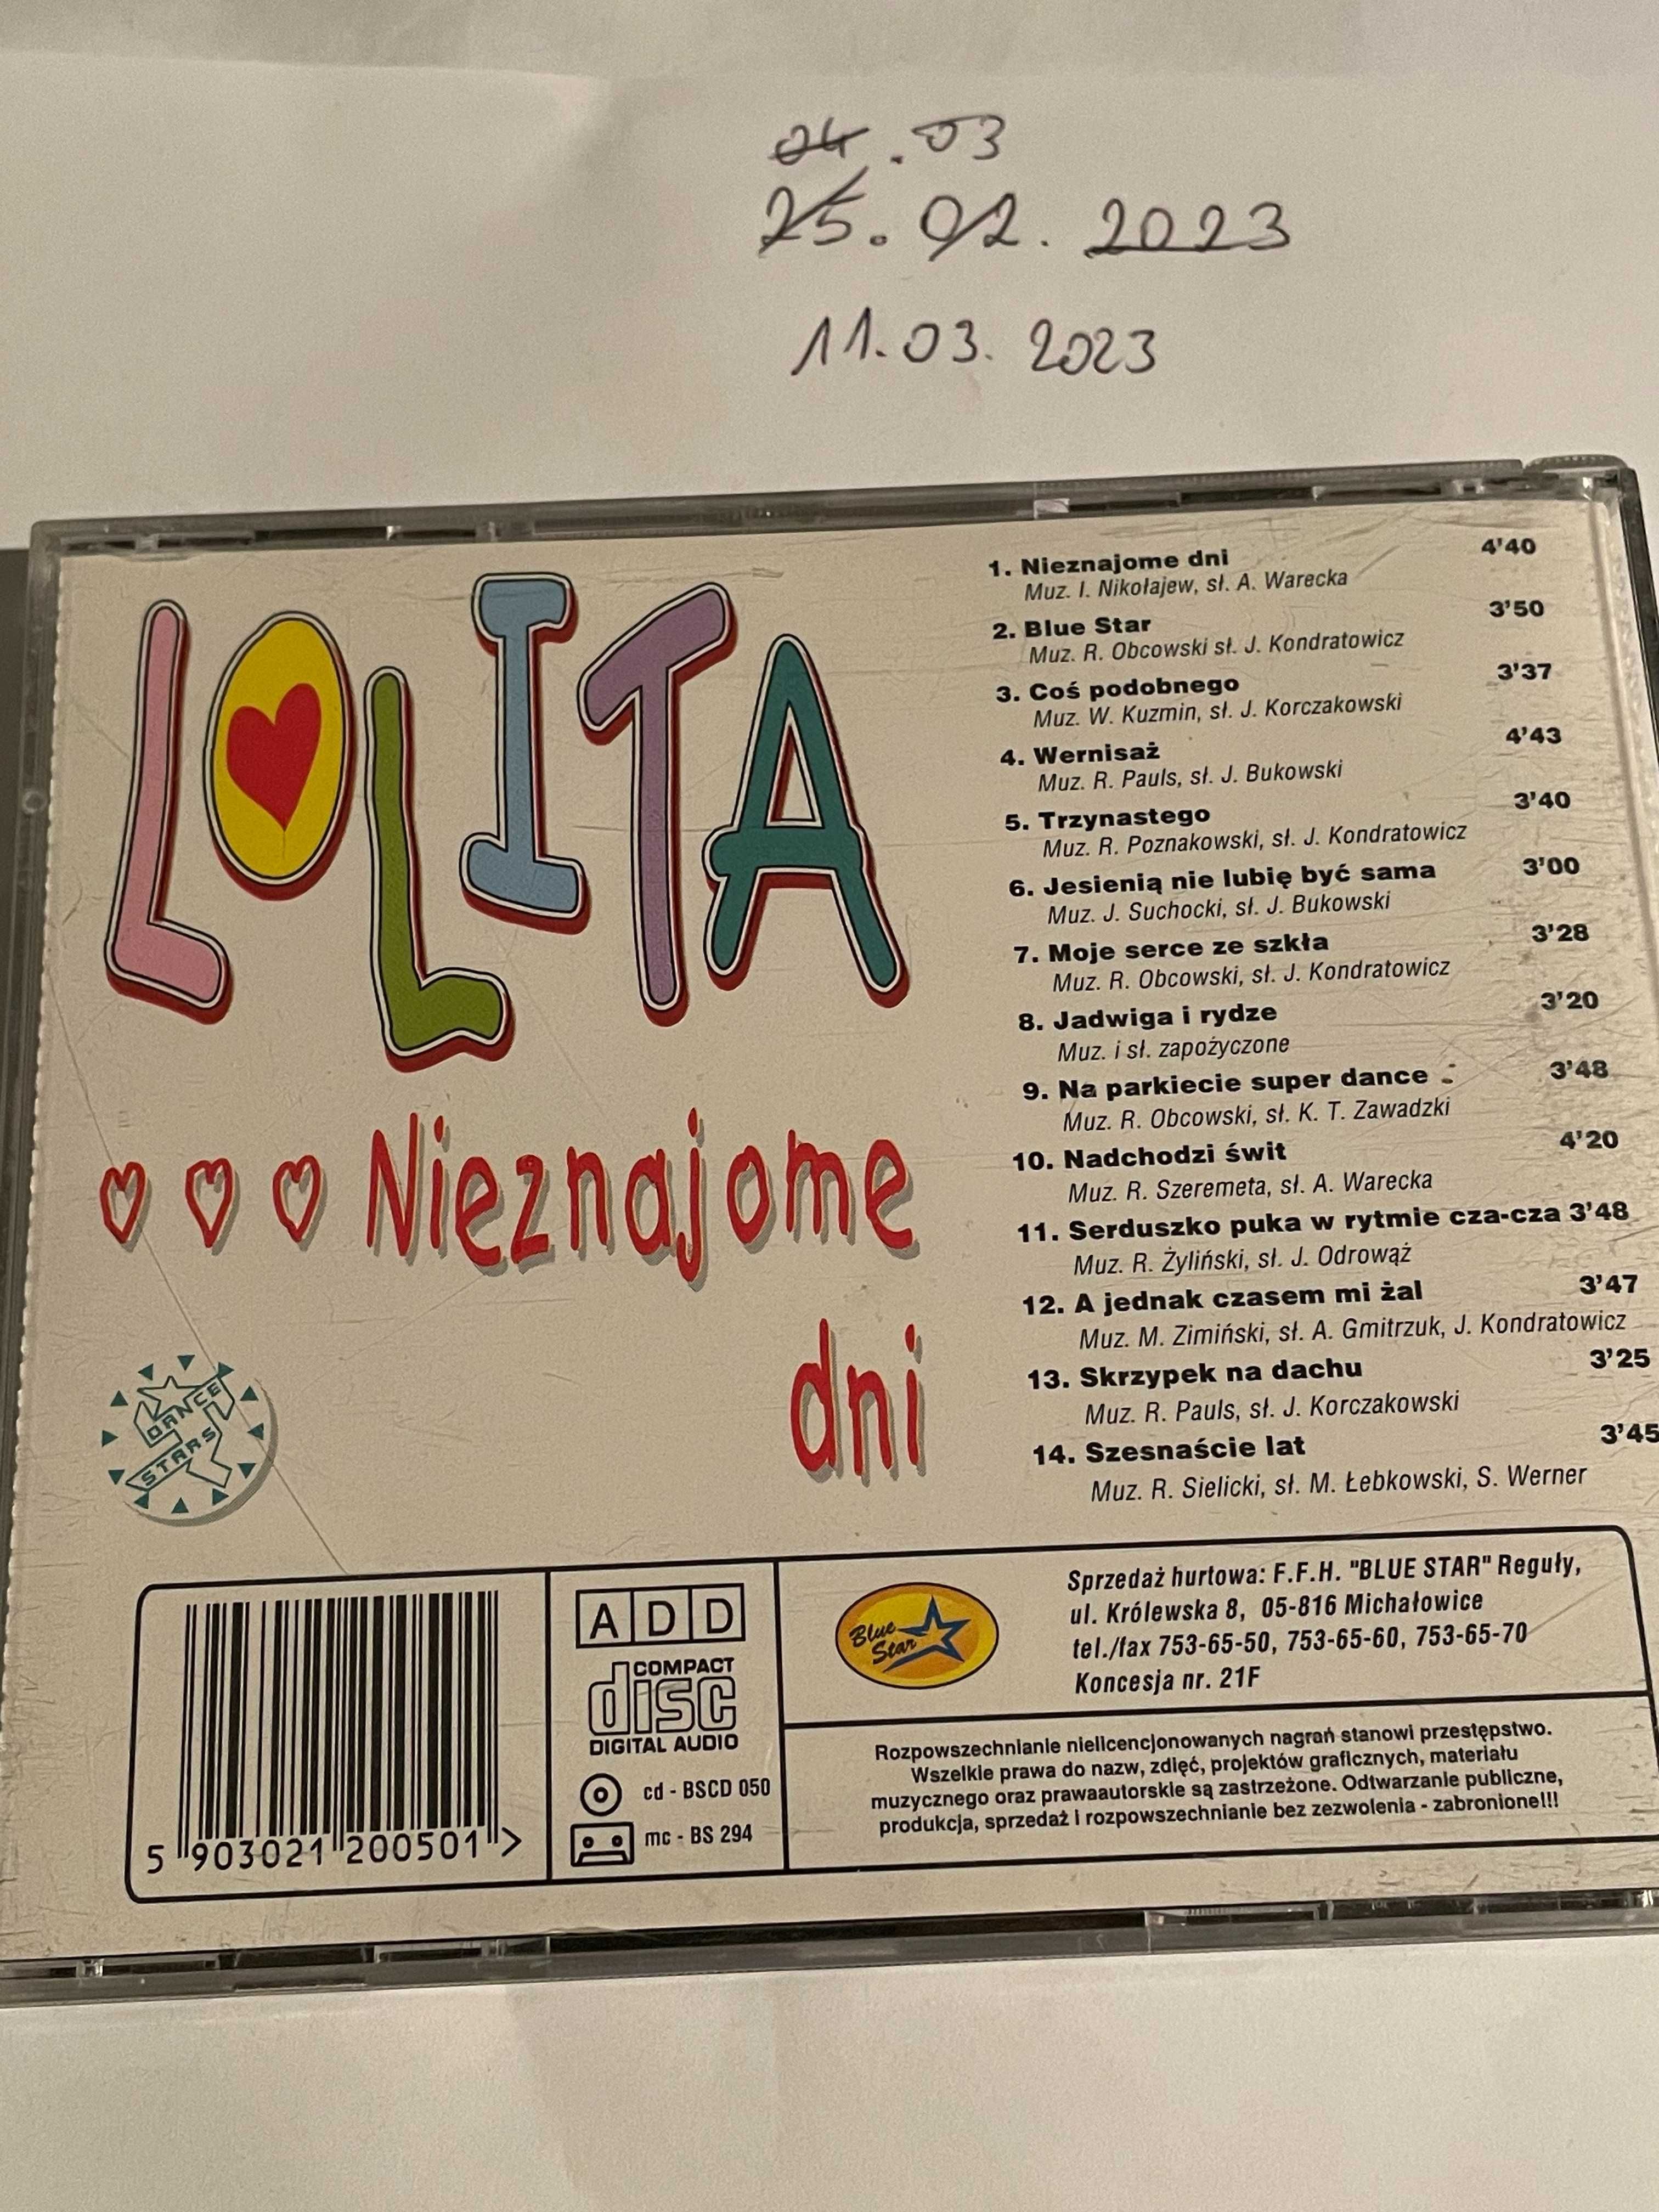 Lolita - Nieznajome dni - blue star - unikat - CD